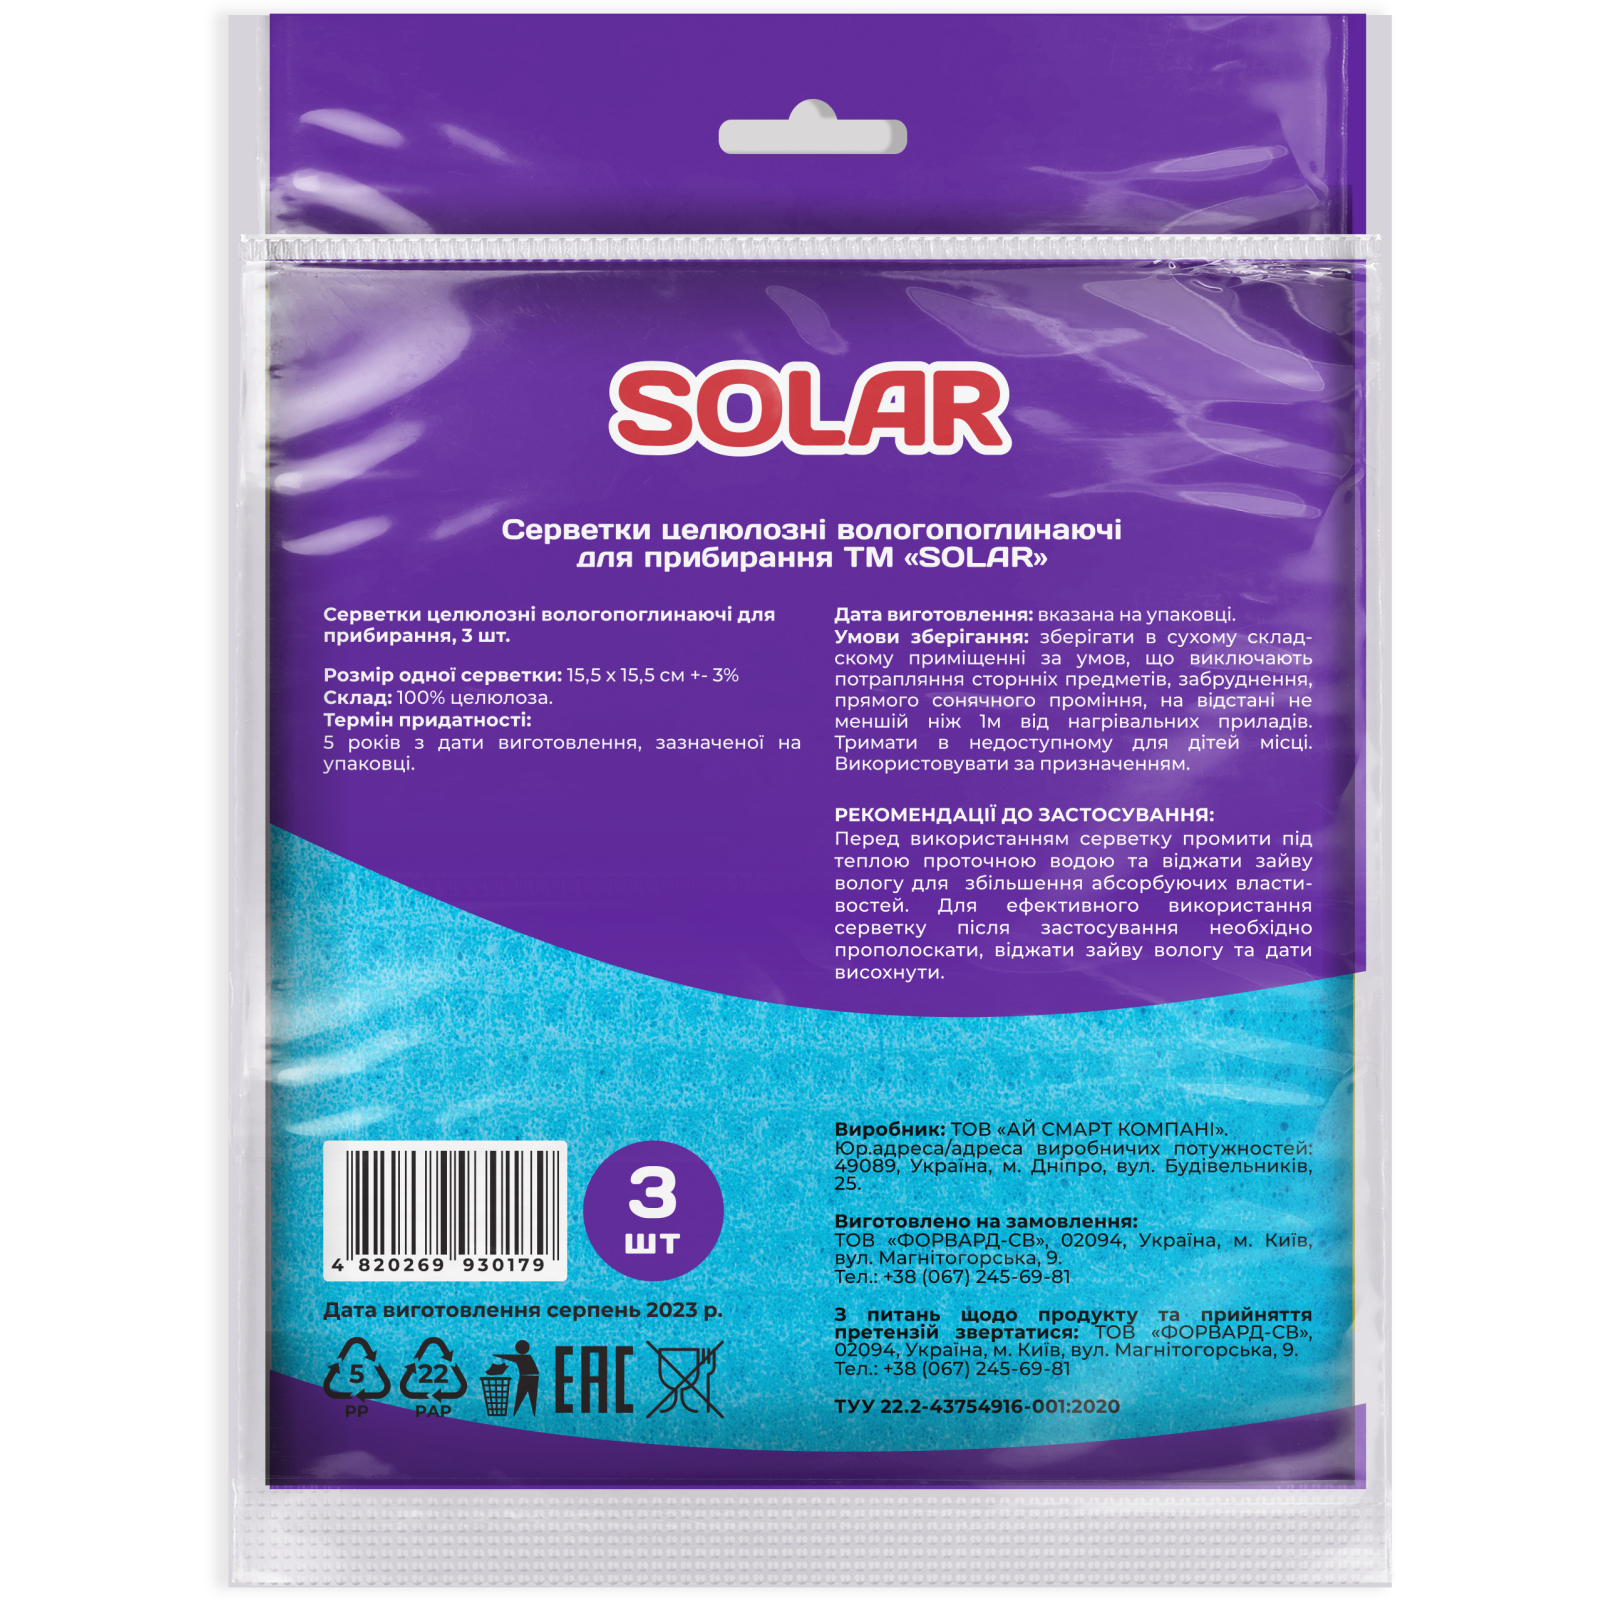 Салфетки для уборки Solar Household Целлюлозные влагопоглощающие 3 шт. (4820269930179) изображение 2